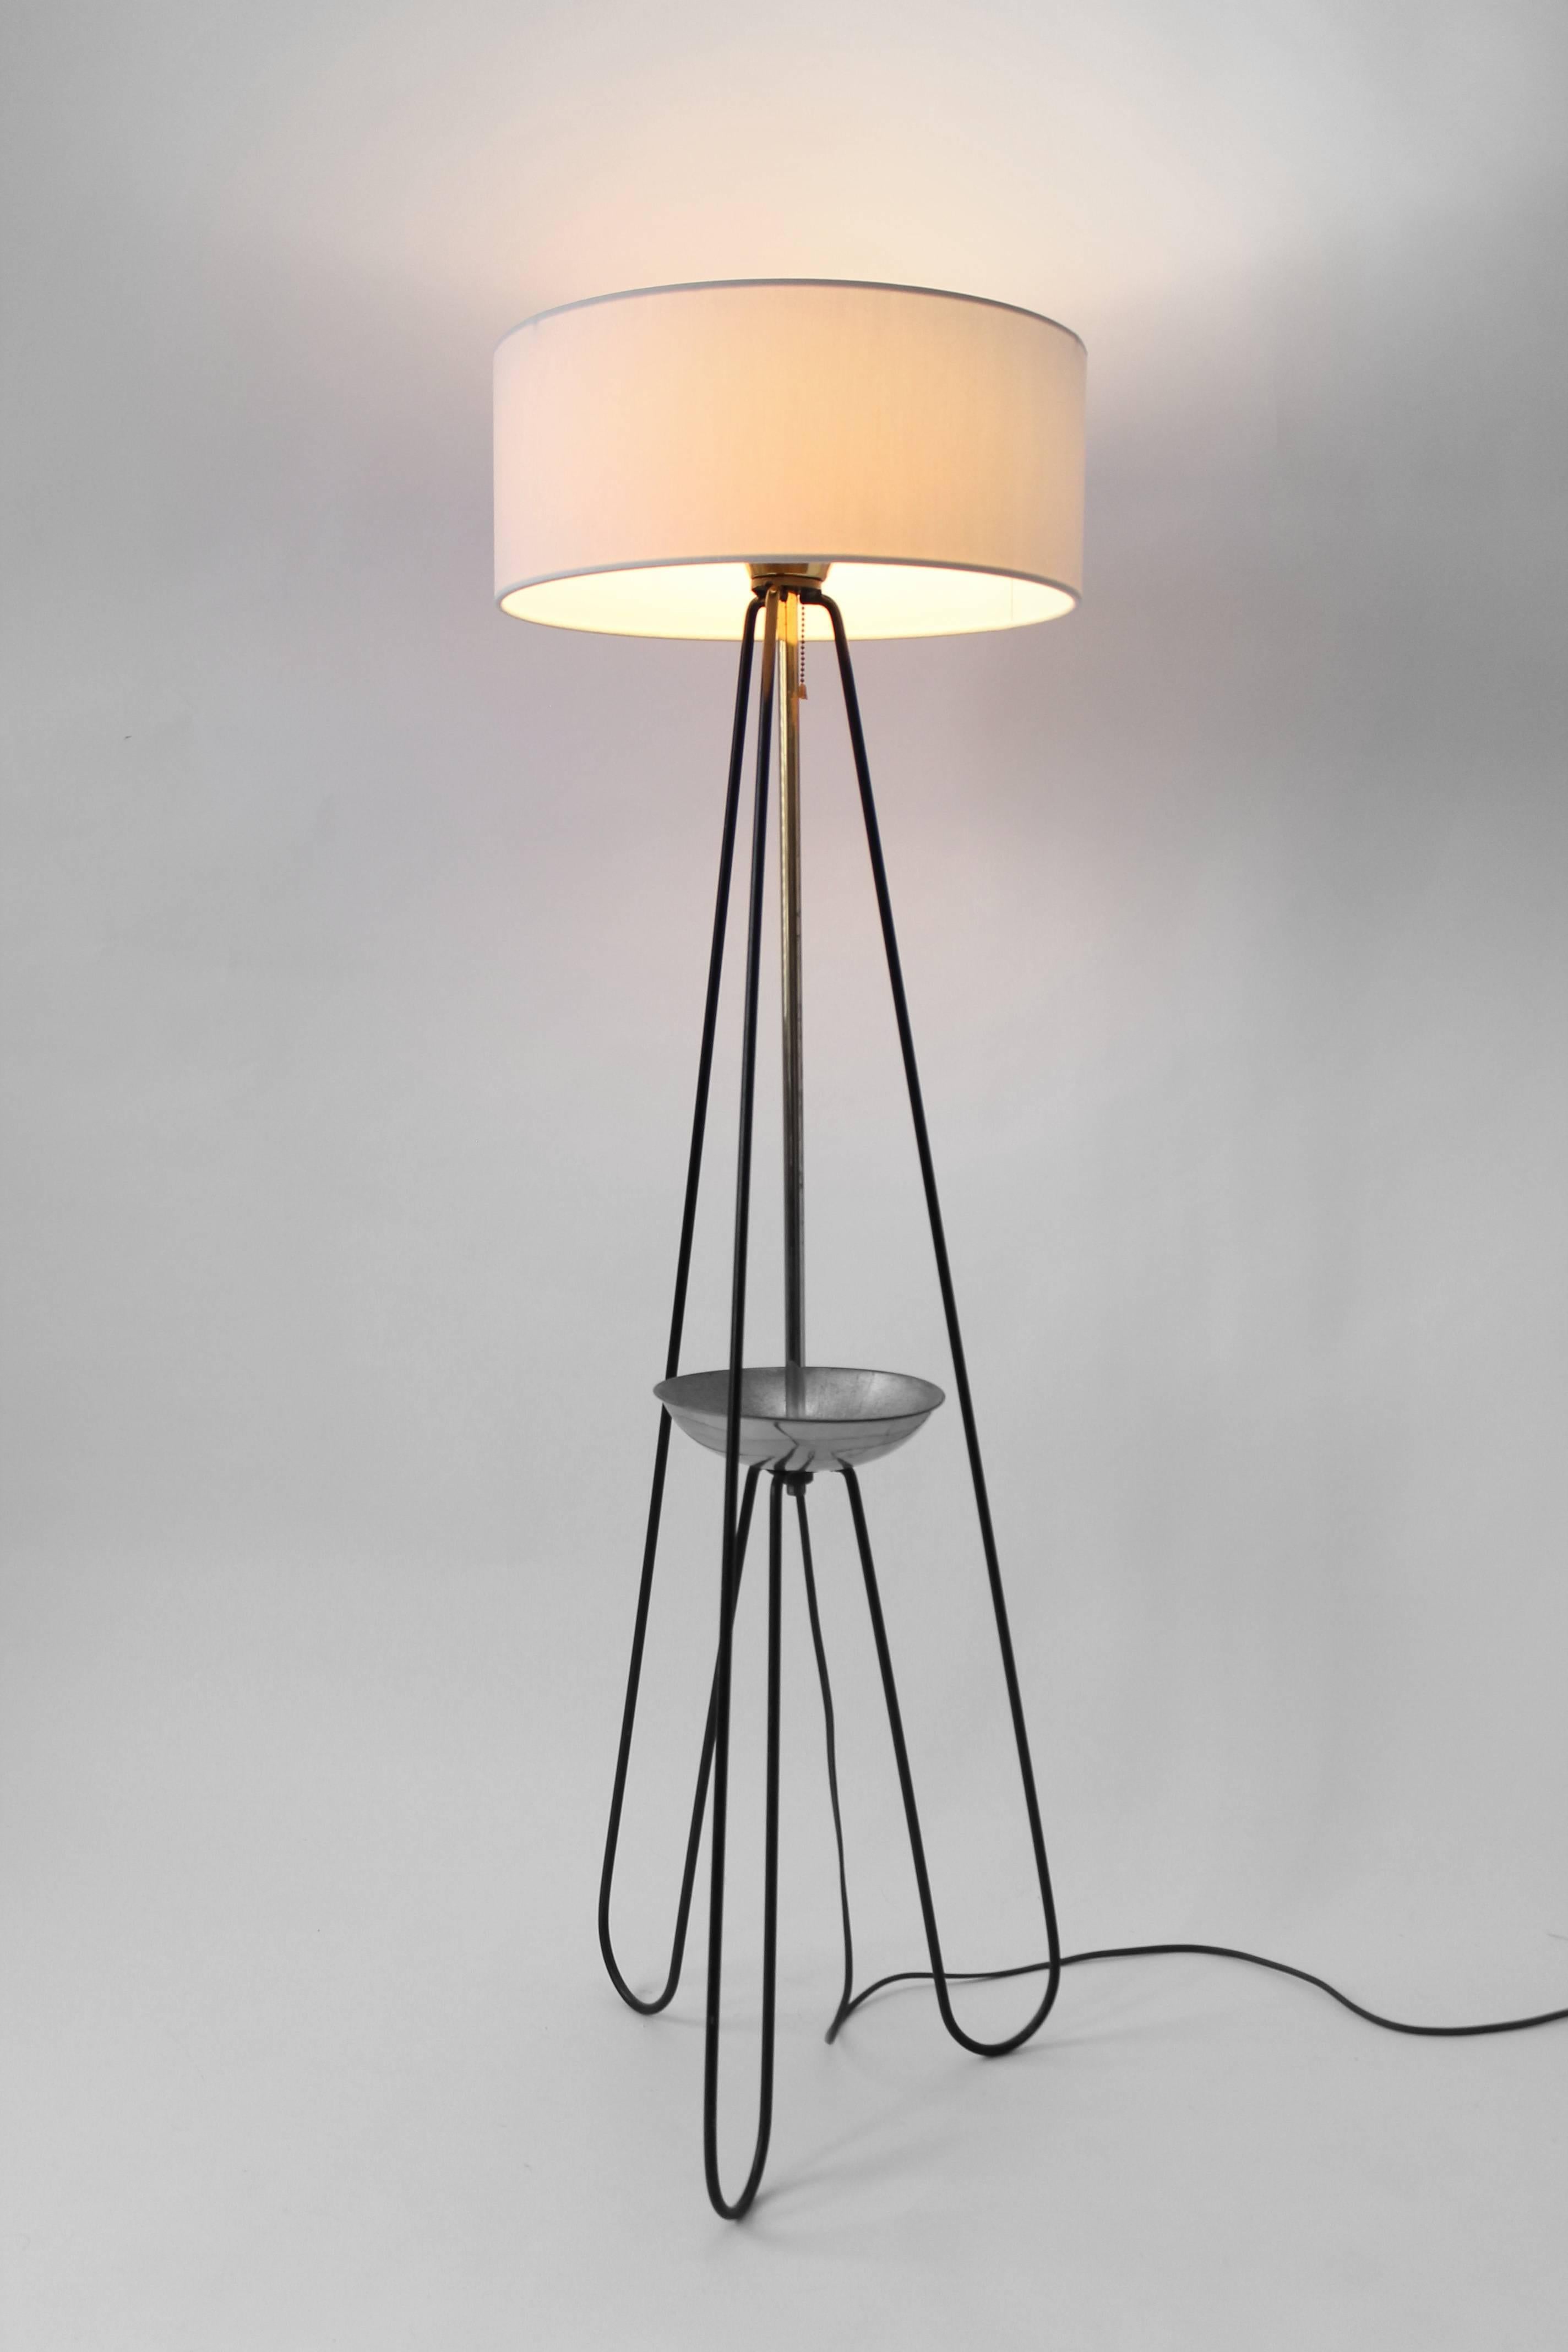 hairpin lamp